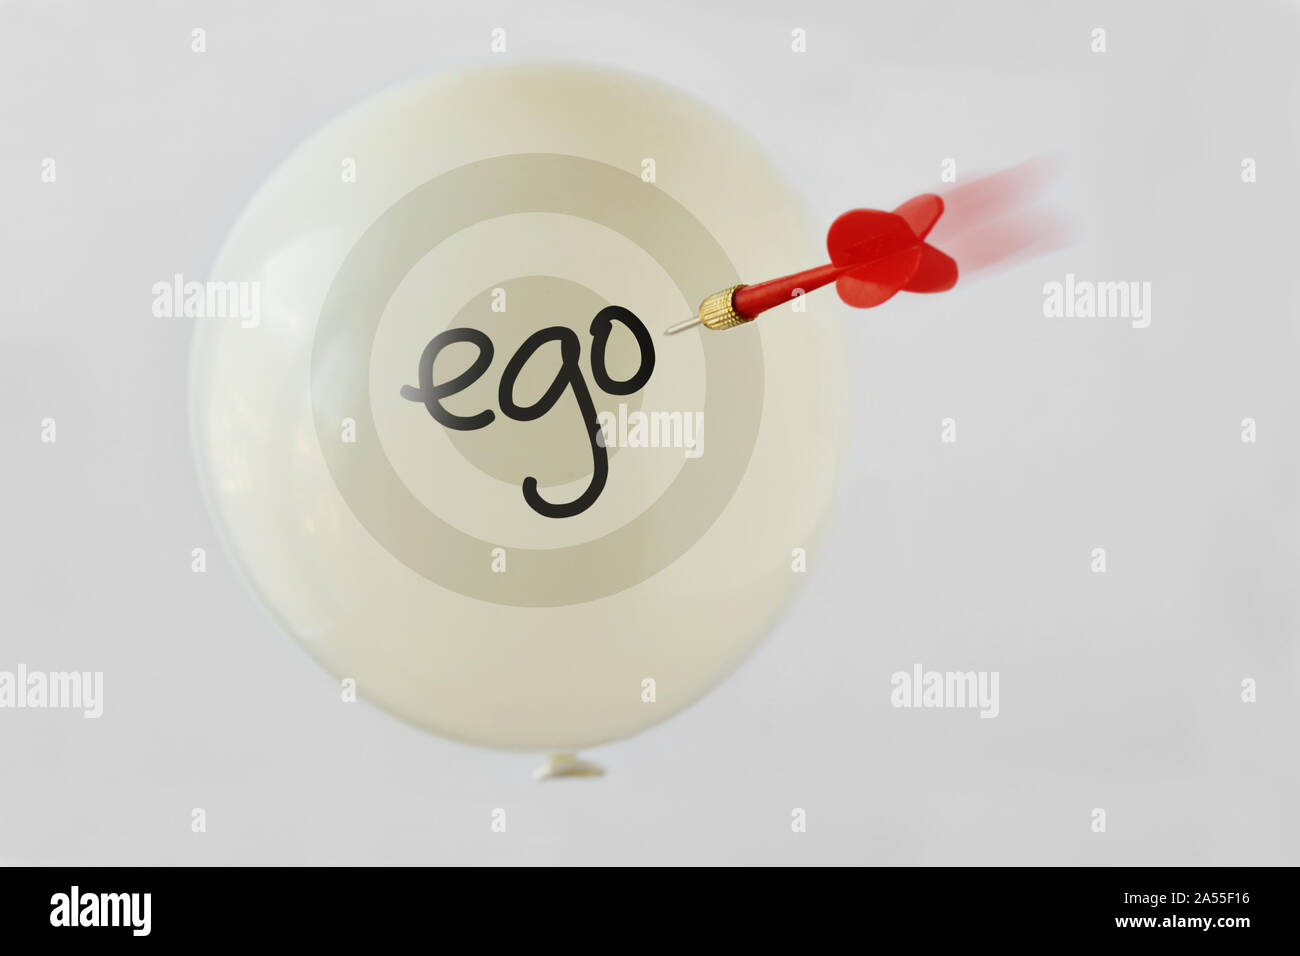 Ballon mit dem Wort Ego und fliegende Pfeil Pfeil auf weißem Hintergrund - Ego Konzept Stockfoto